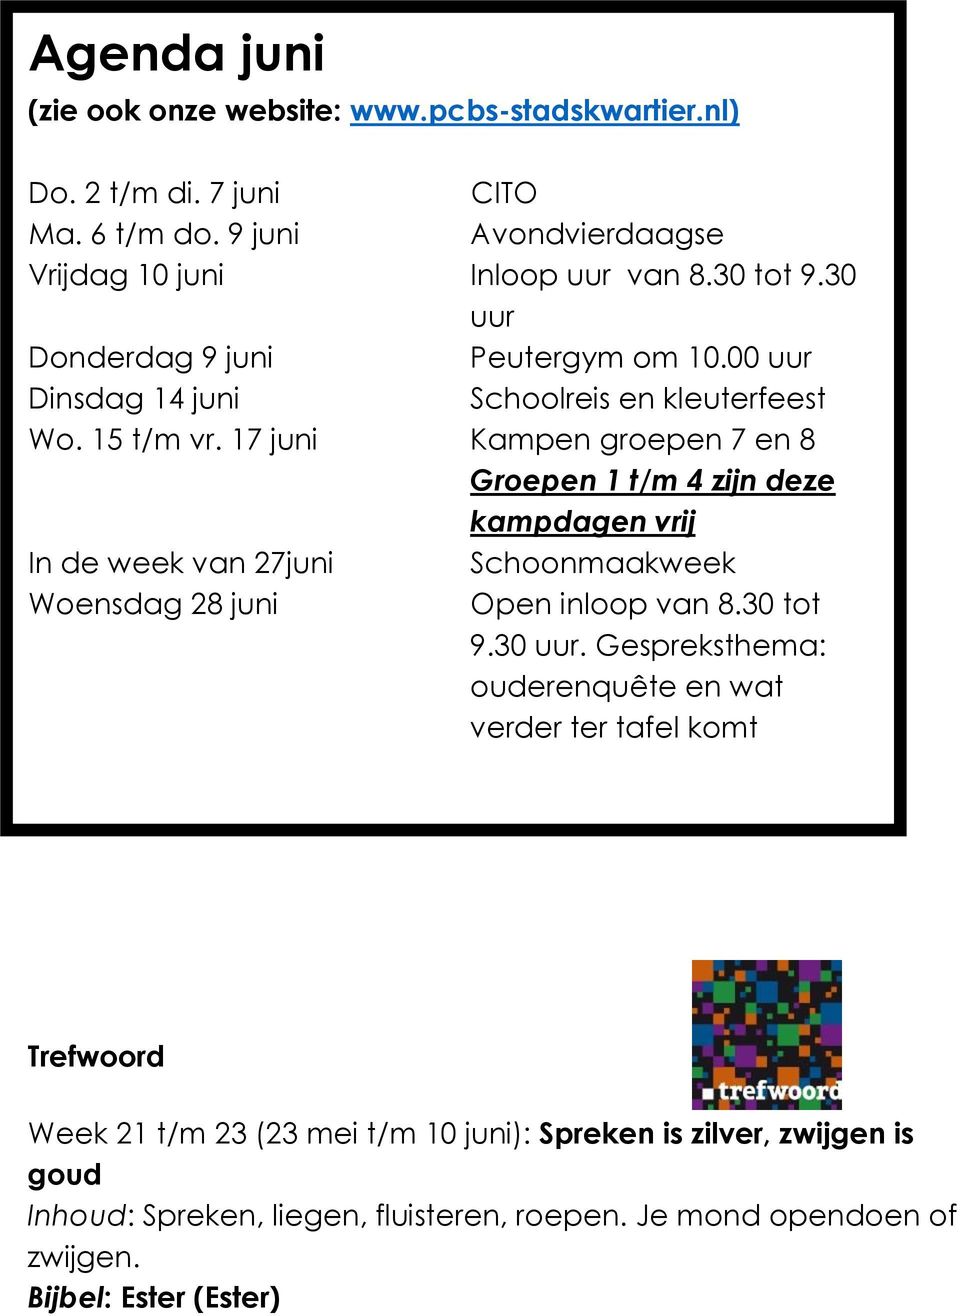 17 juni Kampen groepen 7 en 8 Groepen 1 t/m 4 zijn deze kampdagen vrij In de week van 27juni Schoonmaakweek Woensdag 28 juni Open inloop van 8.30 tot 9.30 uur.